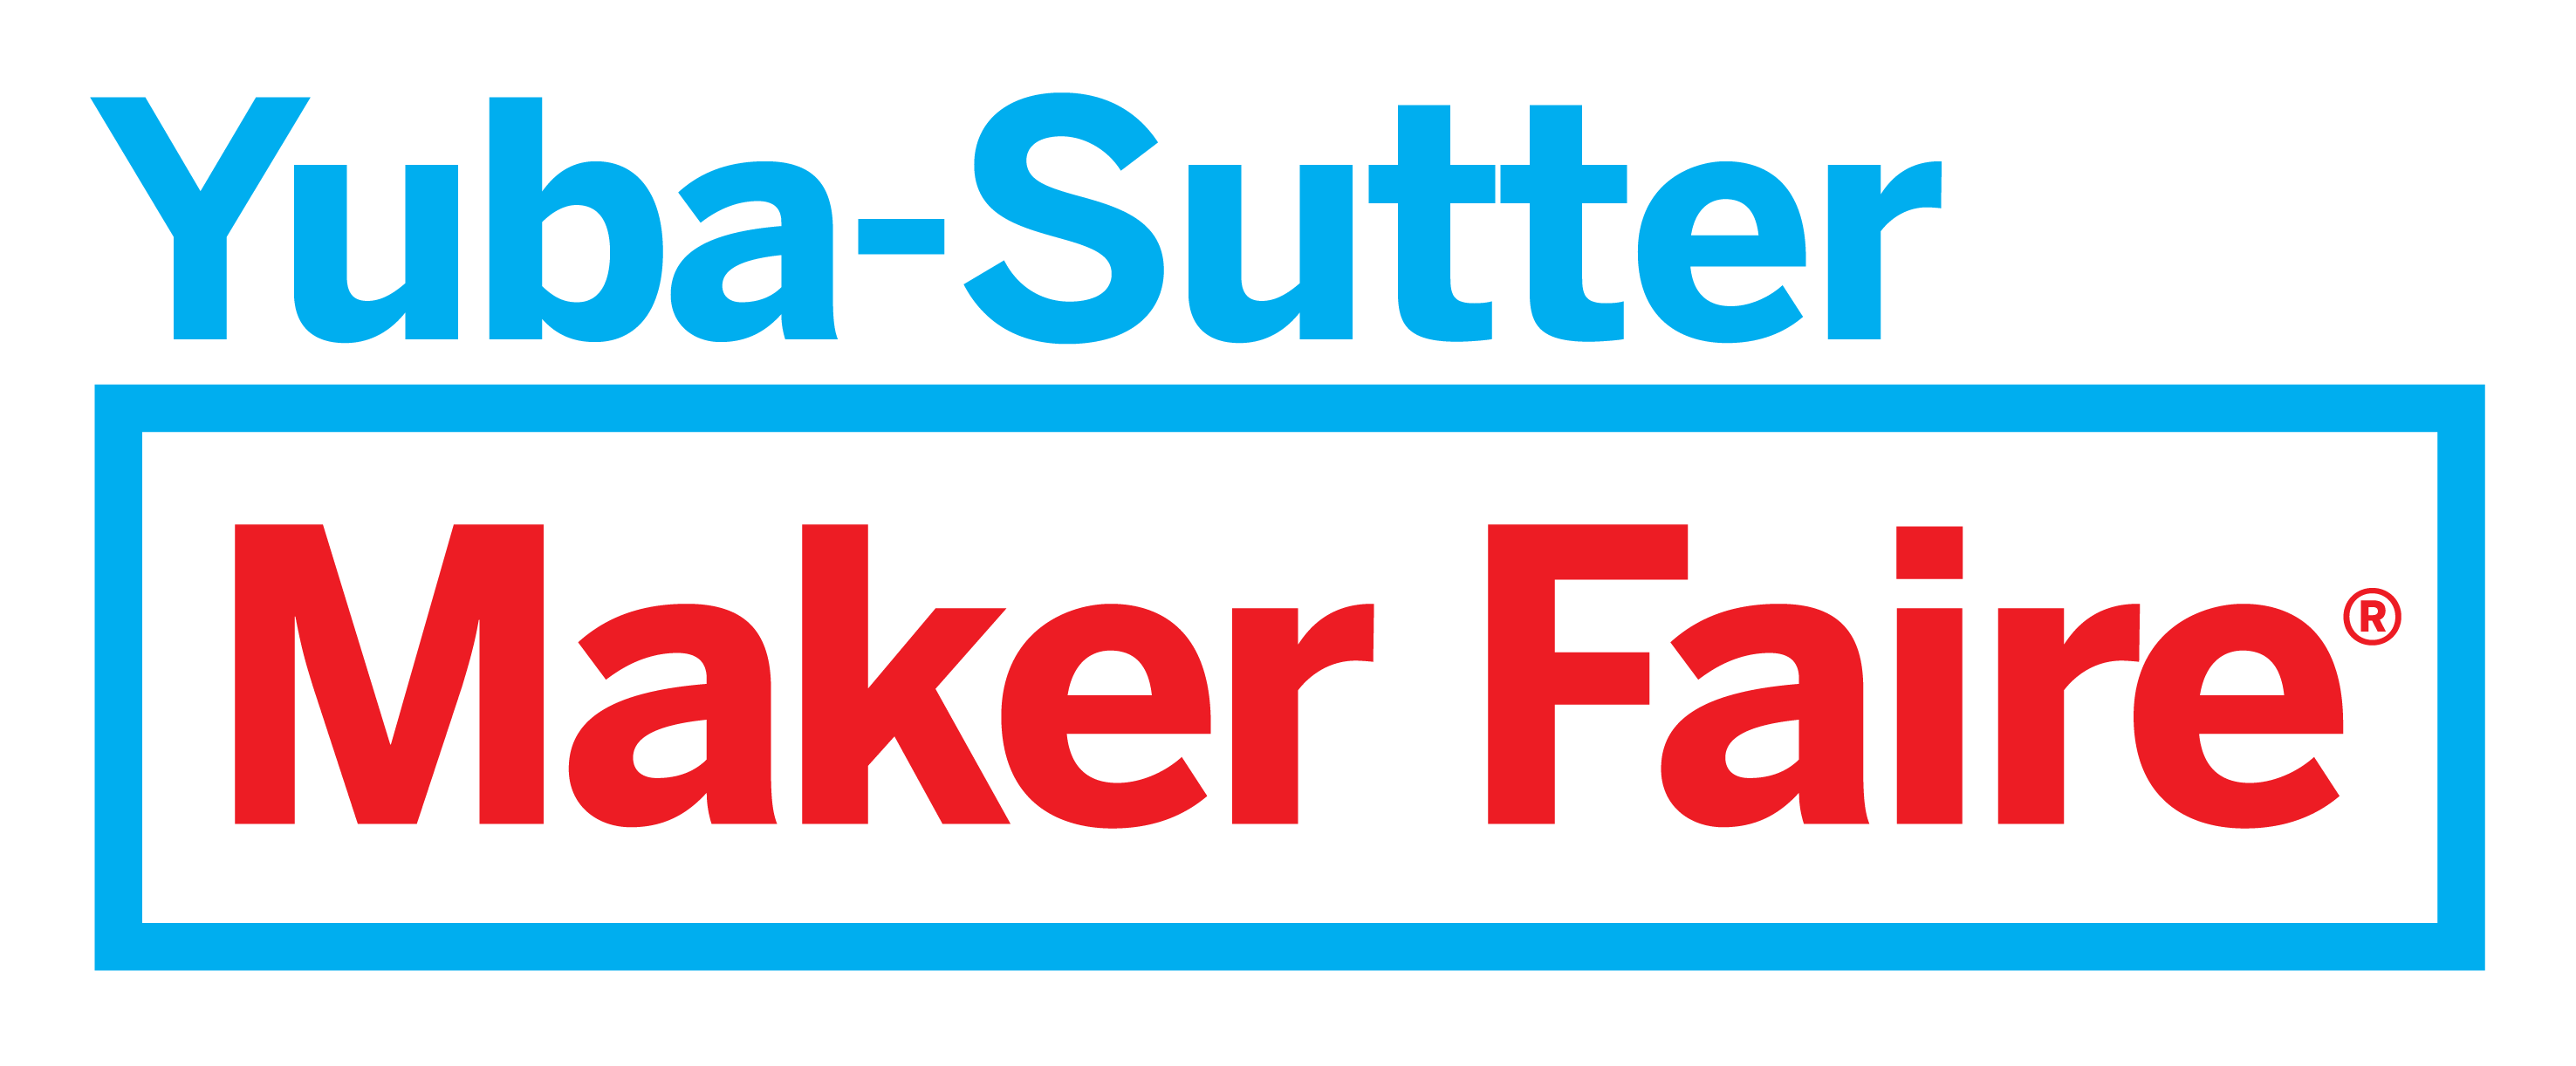 Yuba Sutter Maker Faire logo